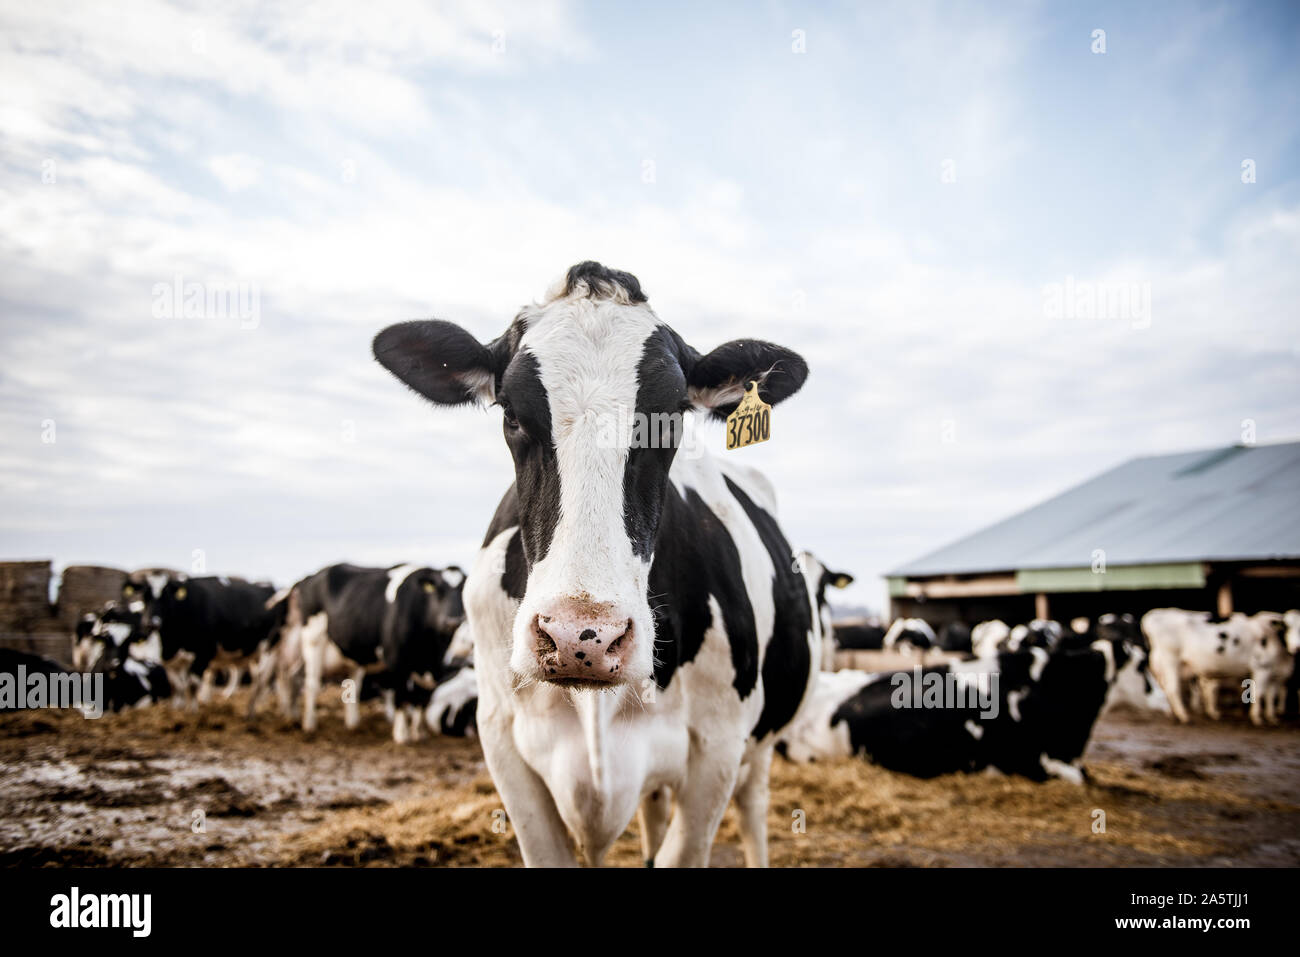 cow on farm Stock Photo